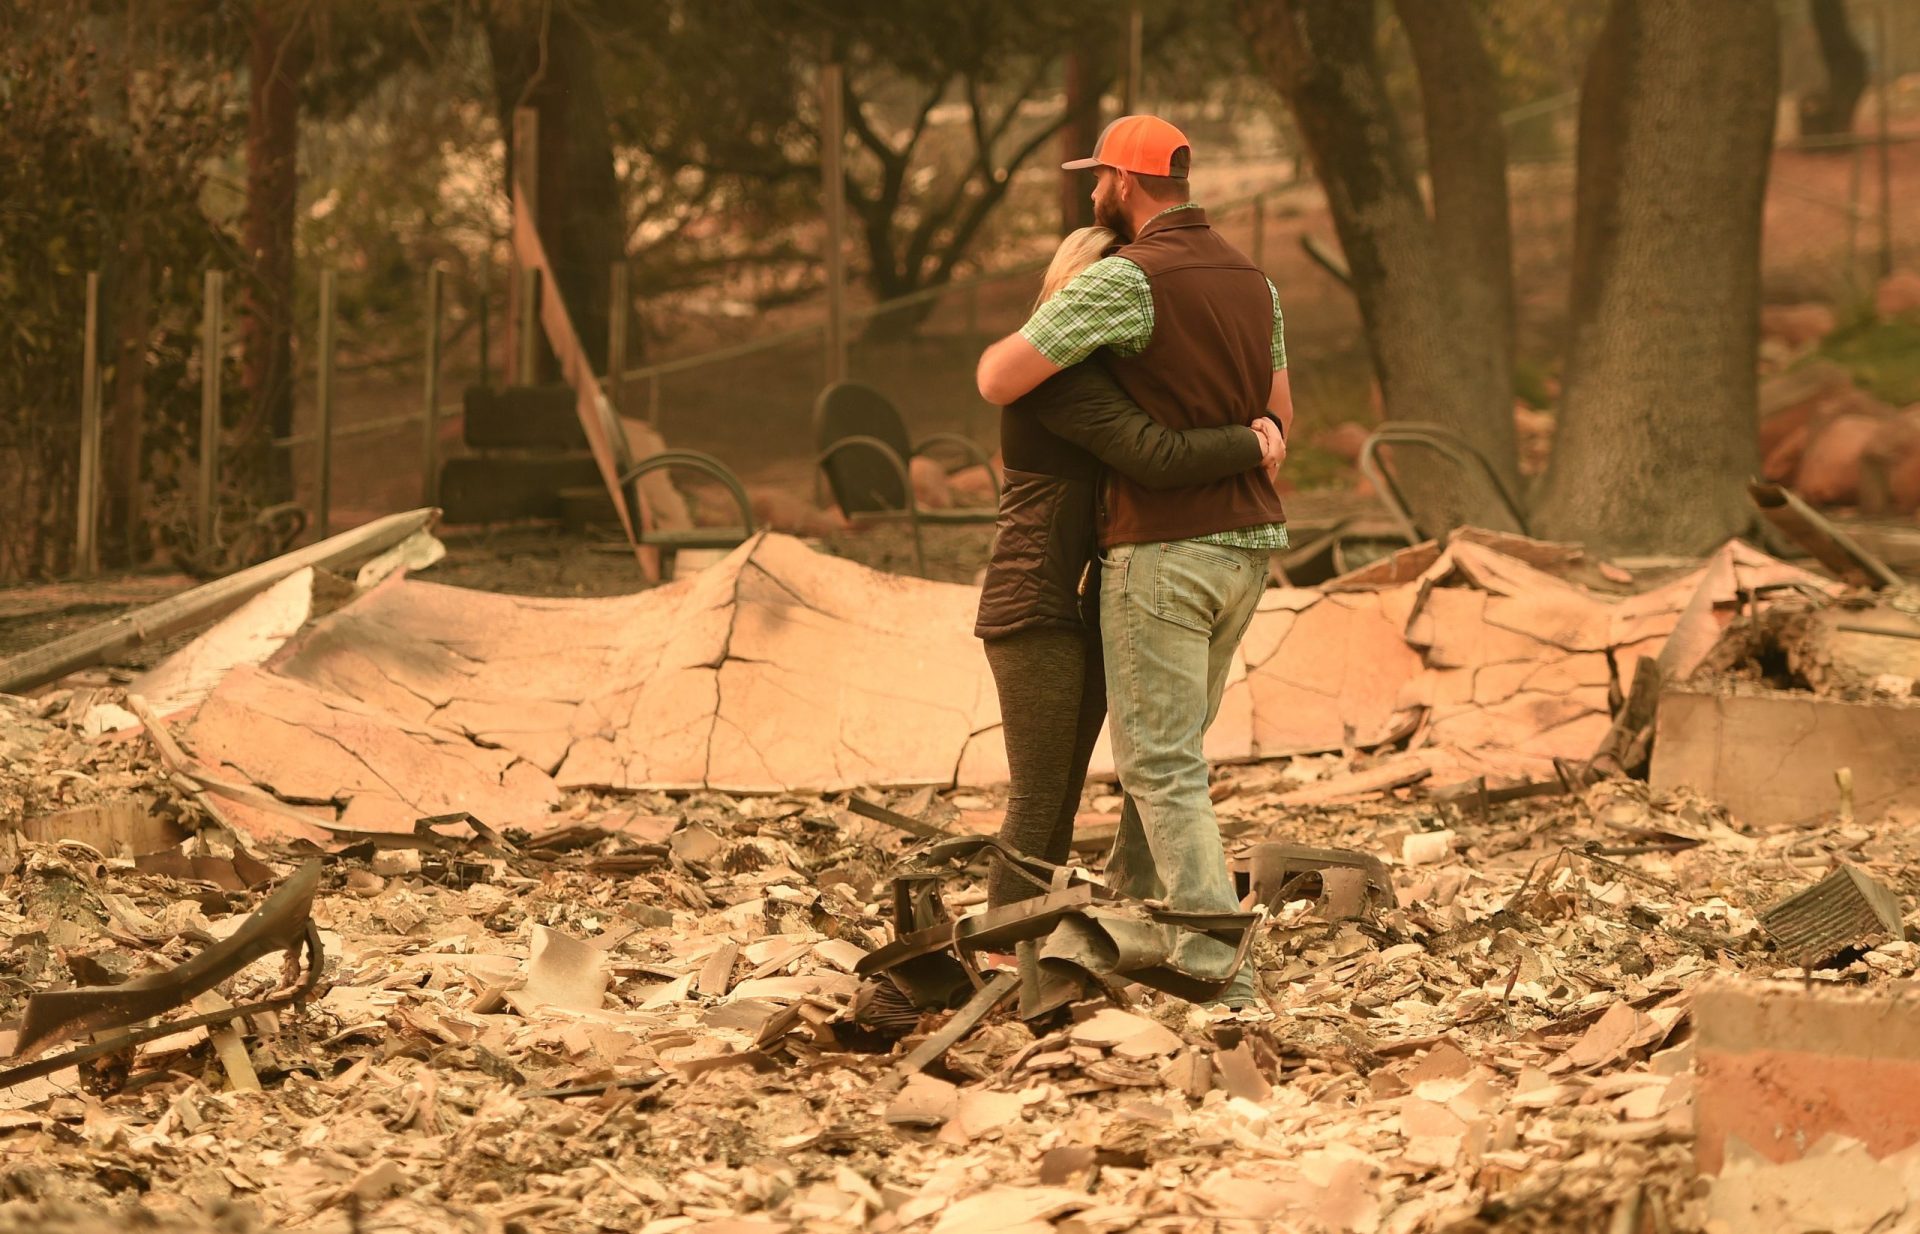 Desaparecidos no incêndio da Califórnia duplicam em menos de 24 horas